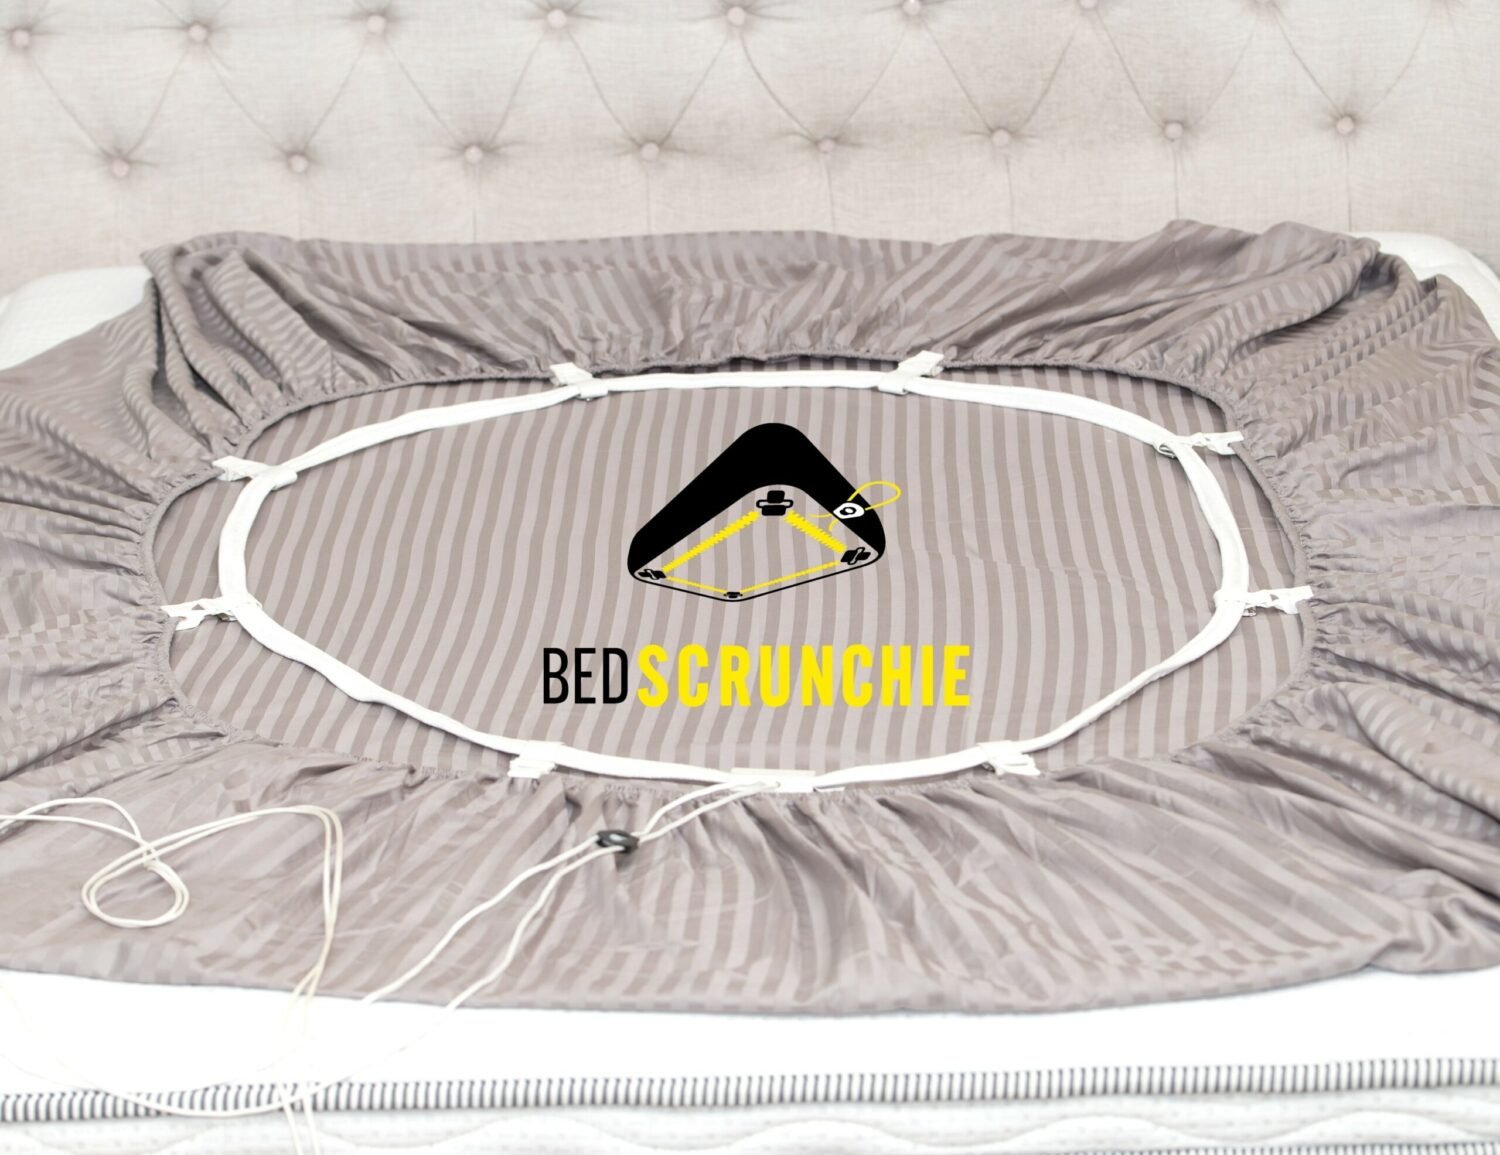 Bed Scrunchie